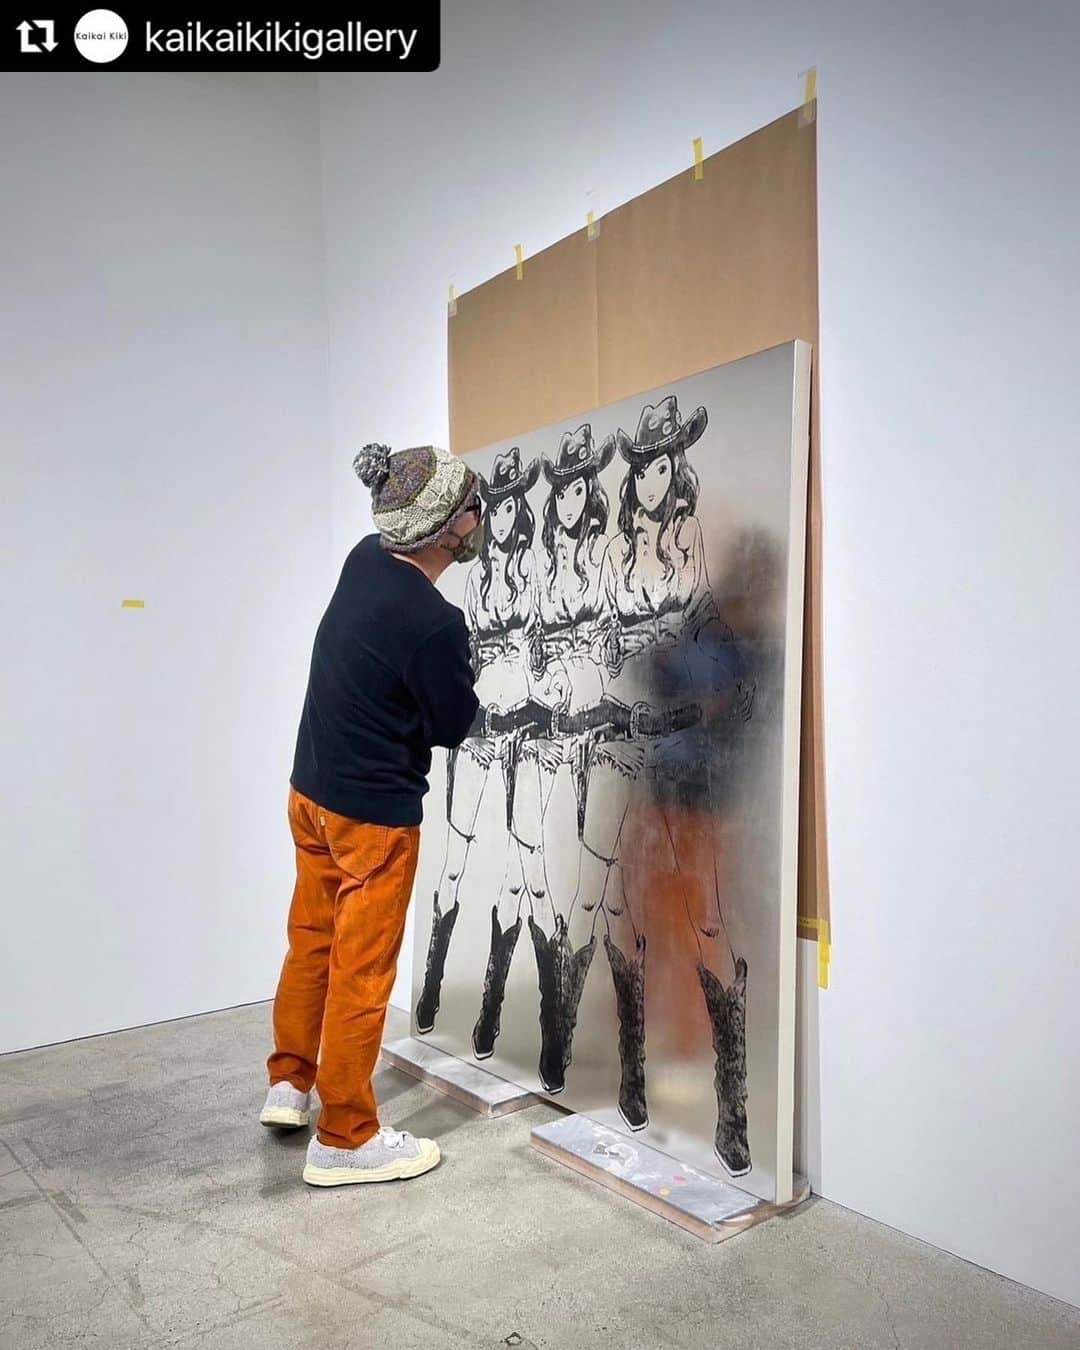 江口寿史のインスタグラム：「#Repost @kaikaikikigallery with @use.repost ・・・ Kaikai Kiki Gallery @kaikaikikigallery is pleased to announce Hisashi Eguchi’s @egutihisasi @eguchiworks solo exhibition "NO MANNER" will be held from Tuesday, January 17, 2023.  The cowgirls depicted by Eguchi are lined up in the same composition as Andy Warhol's "Triple Elvis" in halftone pattern plated with platinum leaves.  Eguchi will be present at the opening reception on Tuesday, January 17, from 6:00 p.m. A talk show by Hisashi Eguchi and Takashi Murakami will be held on Sunday, January 29 at 15:00. . . カイカイキキギャラリー @kaikaikikigallery では1月17日（火）より、江口寿史 @egutihisasi @eguchiworks 個展「NO MANNER」を開催いたします。  江口氏の描くカウガールが、ウォーホルの《トリプル・エルビス》と同じポーズ、構図で並ぶこちらの作品。表面はプラチナ箔が貼られ、網点感のある仕上がりでカウガールたちが並びます。  展覧会初日となる17日18:00からは江口氏 も在廊するオープニングレセプションを開催します。 そして、1月29日(日)15:00からは江口寿史氏と村上によるトークの開催も決定。予約不要となりますので、ぜひお越しください。 . . Hisashi Eguchi Solo Exhibition 「NO MANNER」 January 17 – February 7, 2023 Gallery Hours: 11:00 - 19:00 Closed: Sundays, Mondays, Public holidays  Opening Reception Tuesday, January 17, 2023 18:00-20:00  Talk Event Sunday, January 29, 2023 15:00- Hisashi Eguchi, Takashi Murakami . . 江口寿史個展 「NO MANNER」 2023年1月17日（火）- 2023年2月7日（木） 開廊時間：11:00〜19:00 閉廊日：日曜・月曜・祝日  オープニングレセプション 1/17(火) 18:00〜20:00 ※サインの依頼等はご遠慮ください。  トークイベント 1/29(日)15:00〜 江口寿史氏、村上隆 ※予約不要 ※サインの依頼等はご遠慮ください。 . . @egutihisasi @eguchiworks . ©Hisashi Eguchi . . #江口寿史 　#HisashiEguchi #kaikaikiki #kaikaikikigallery」